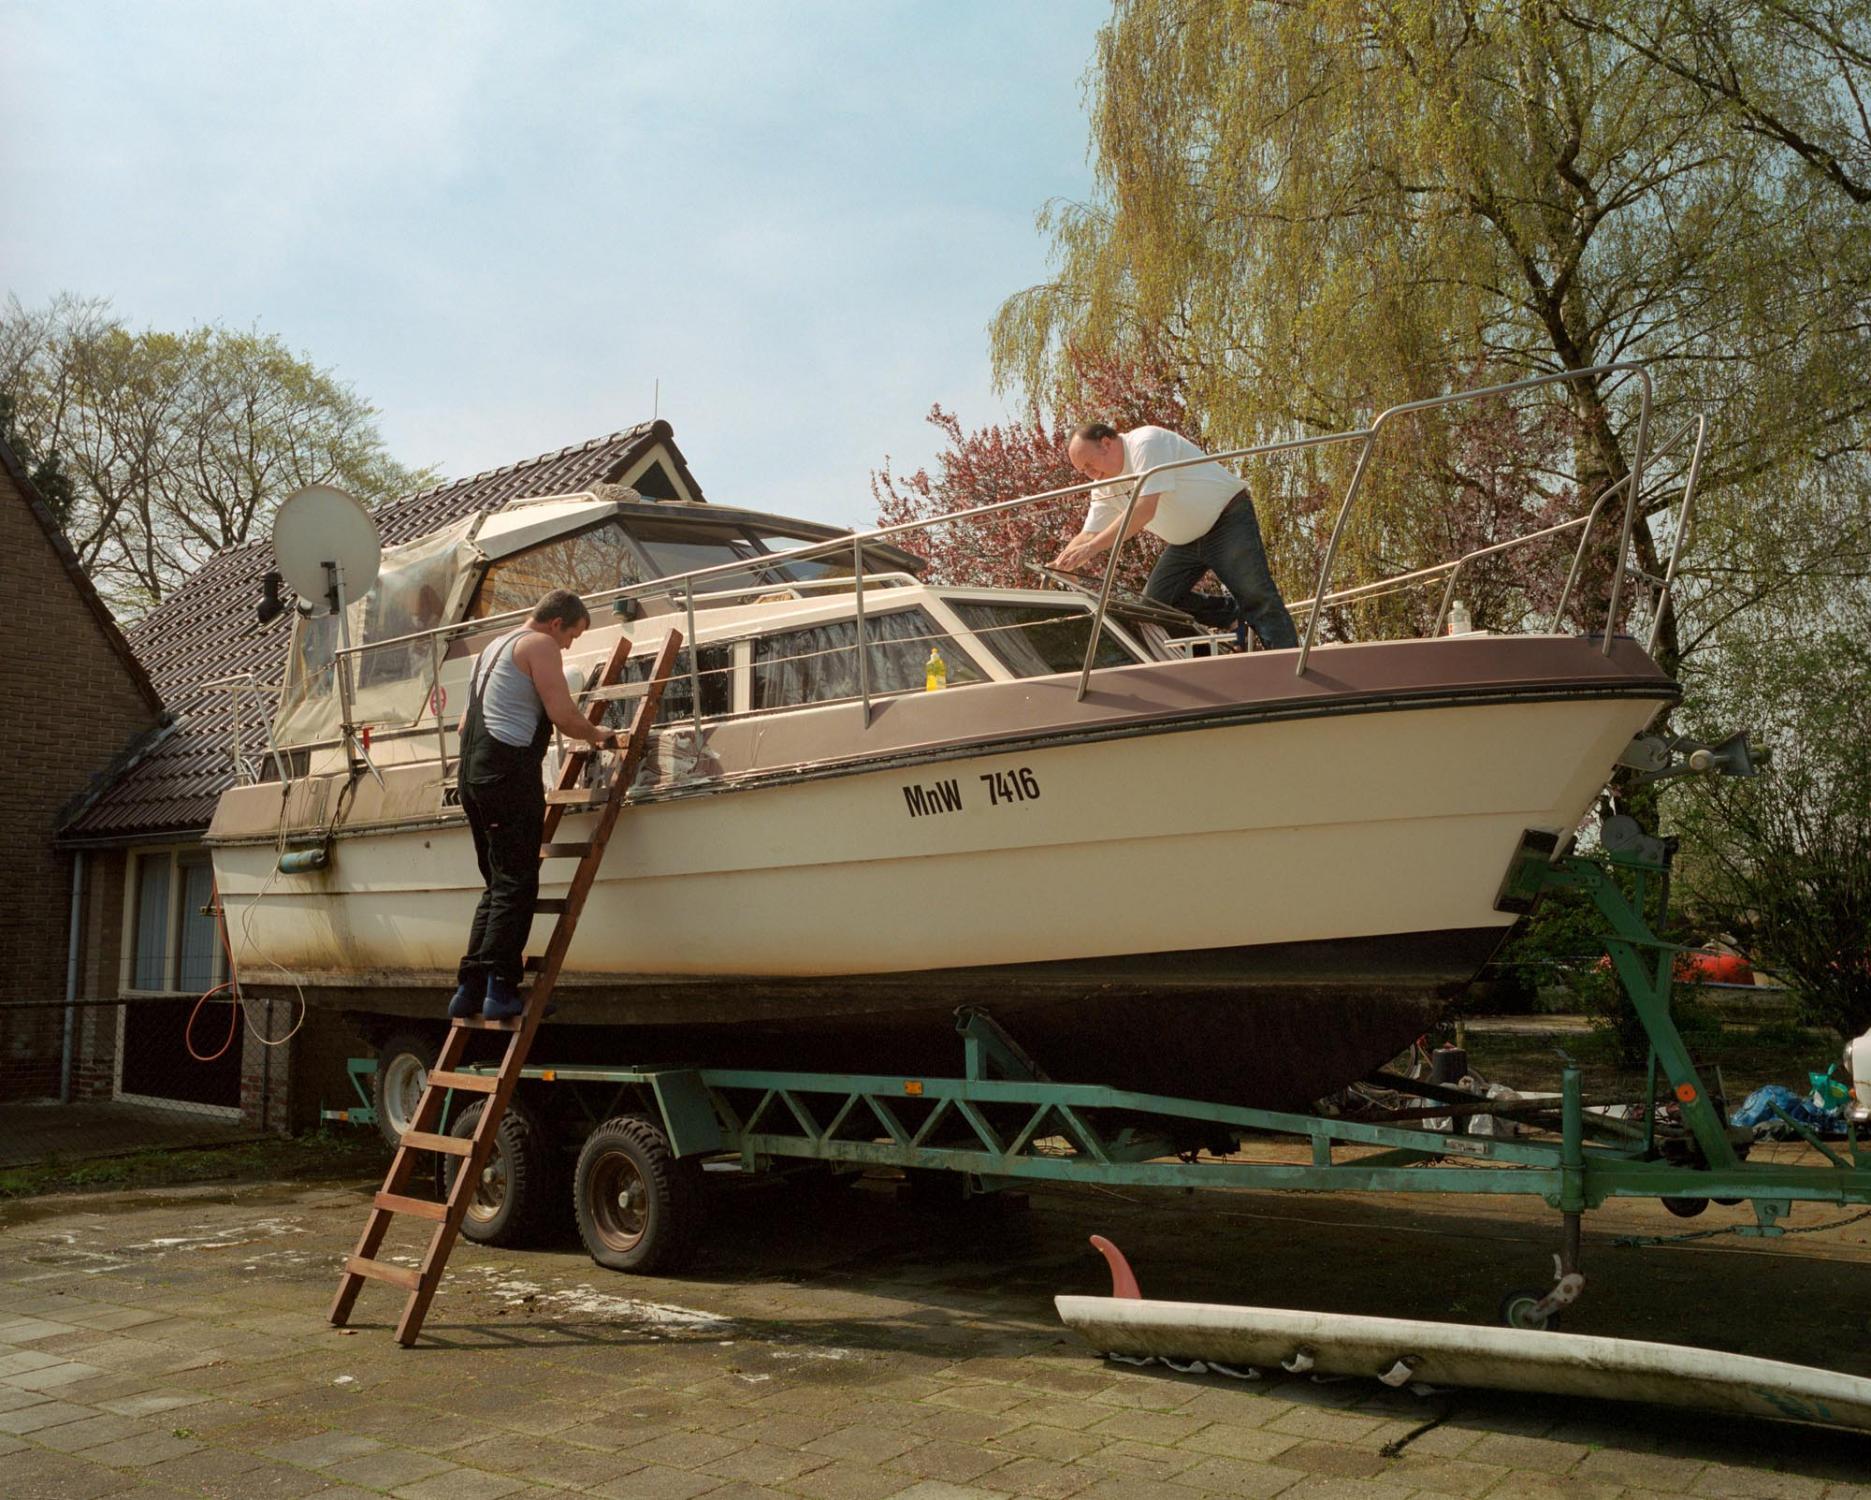 The Netherlands - Boat renovation. Midlaren, Drenthe, The Netherlands. May...